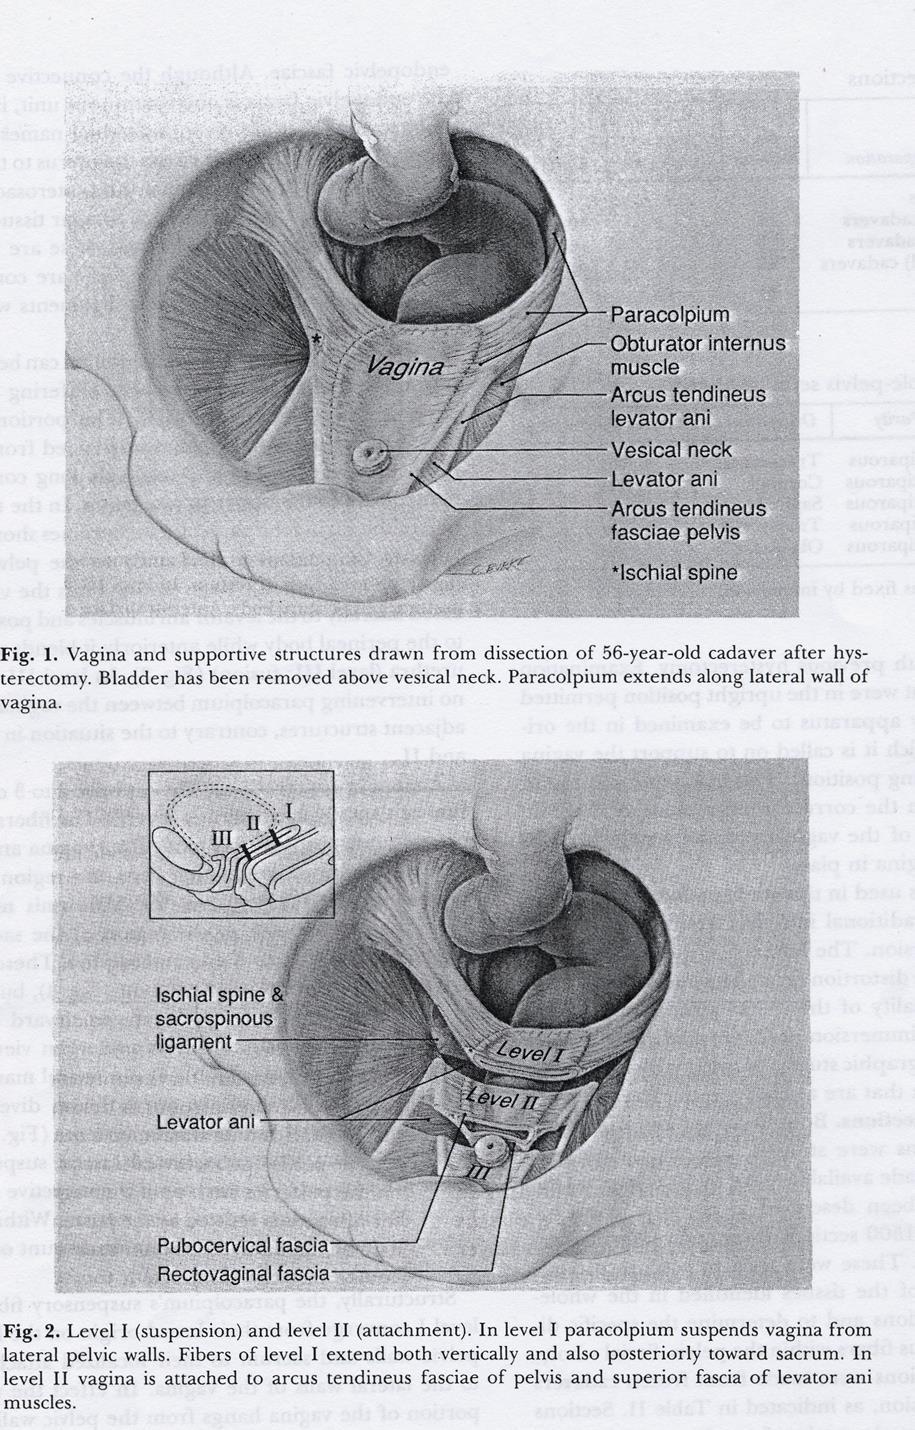 Level II - attachment Slidväggarna är hålls på plats av den endopelvina fascian